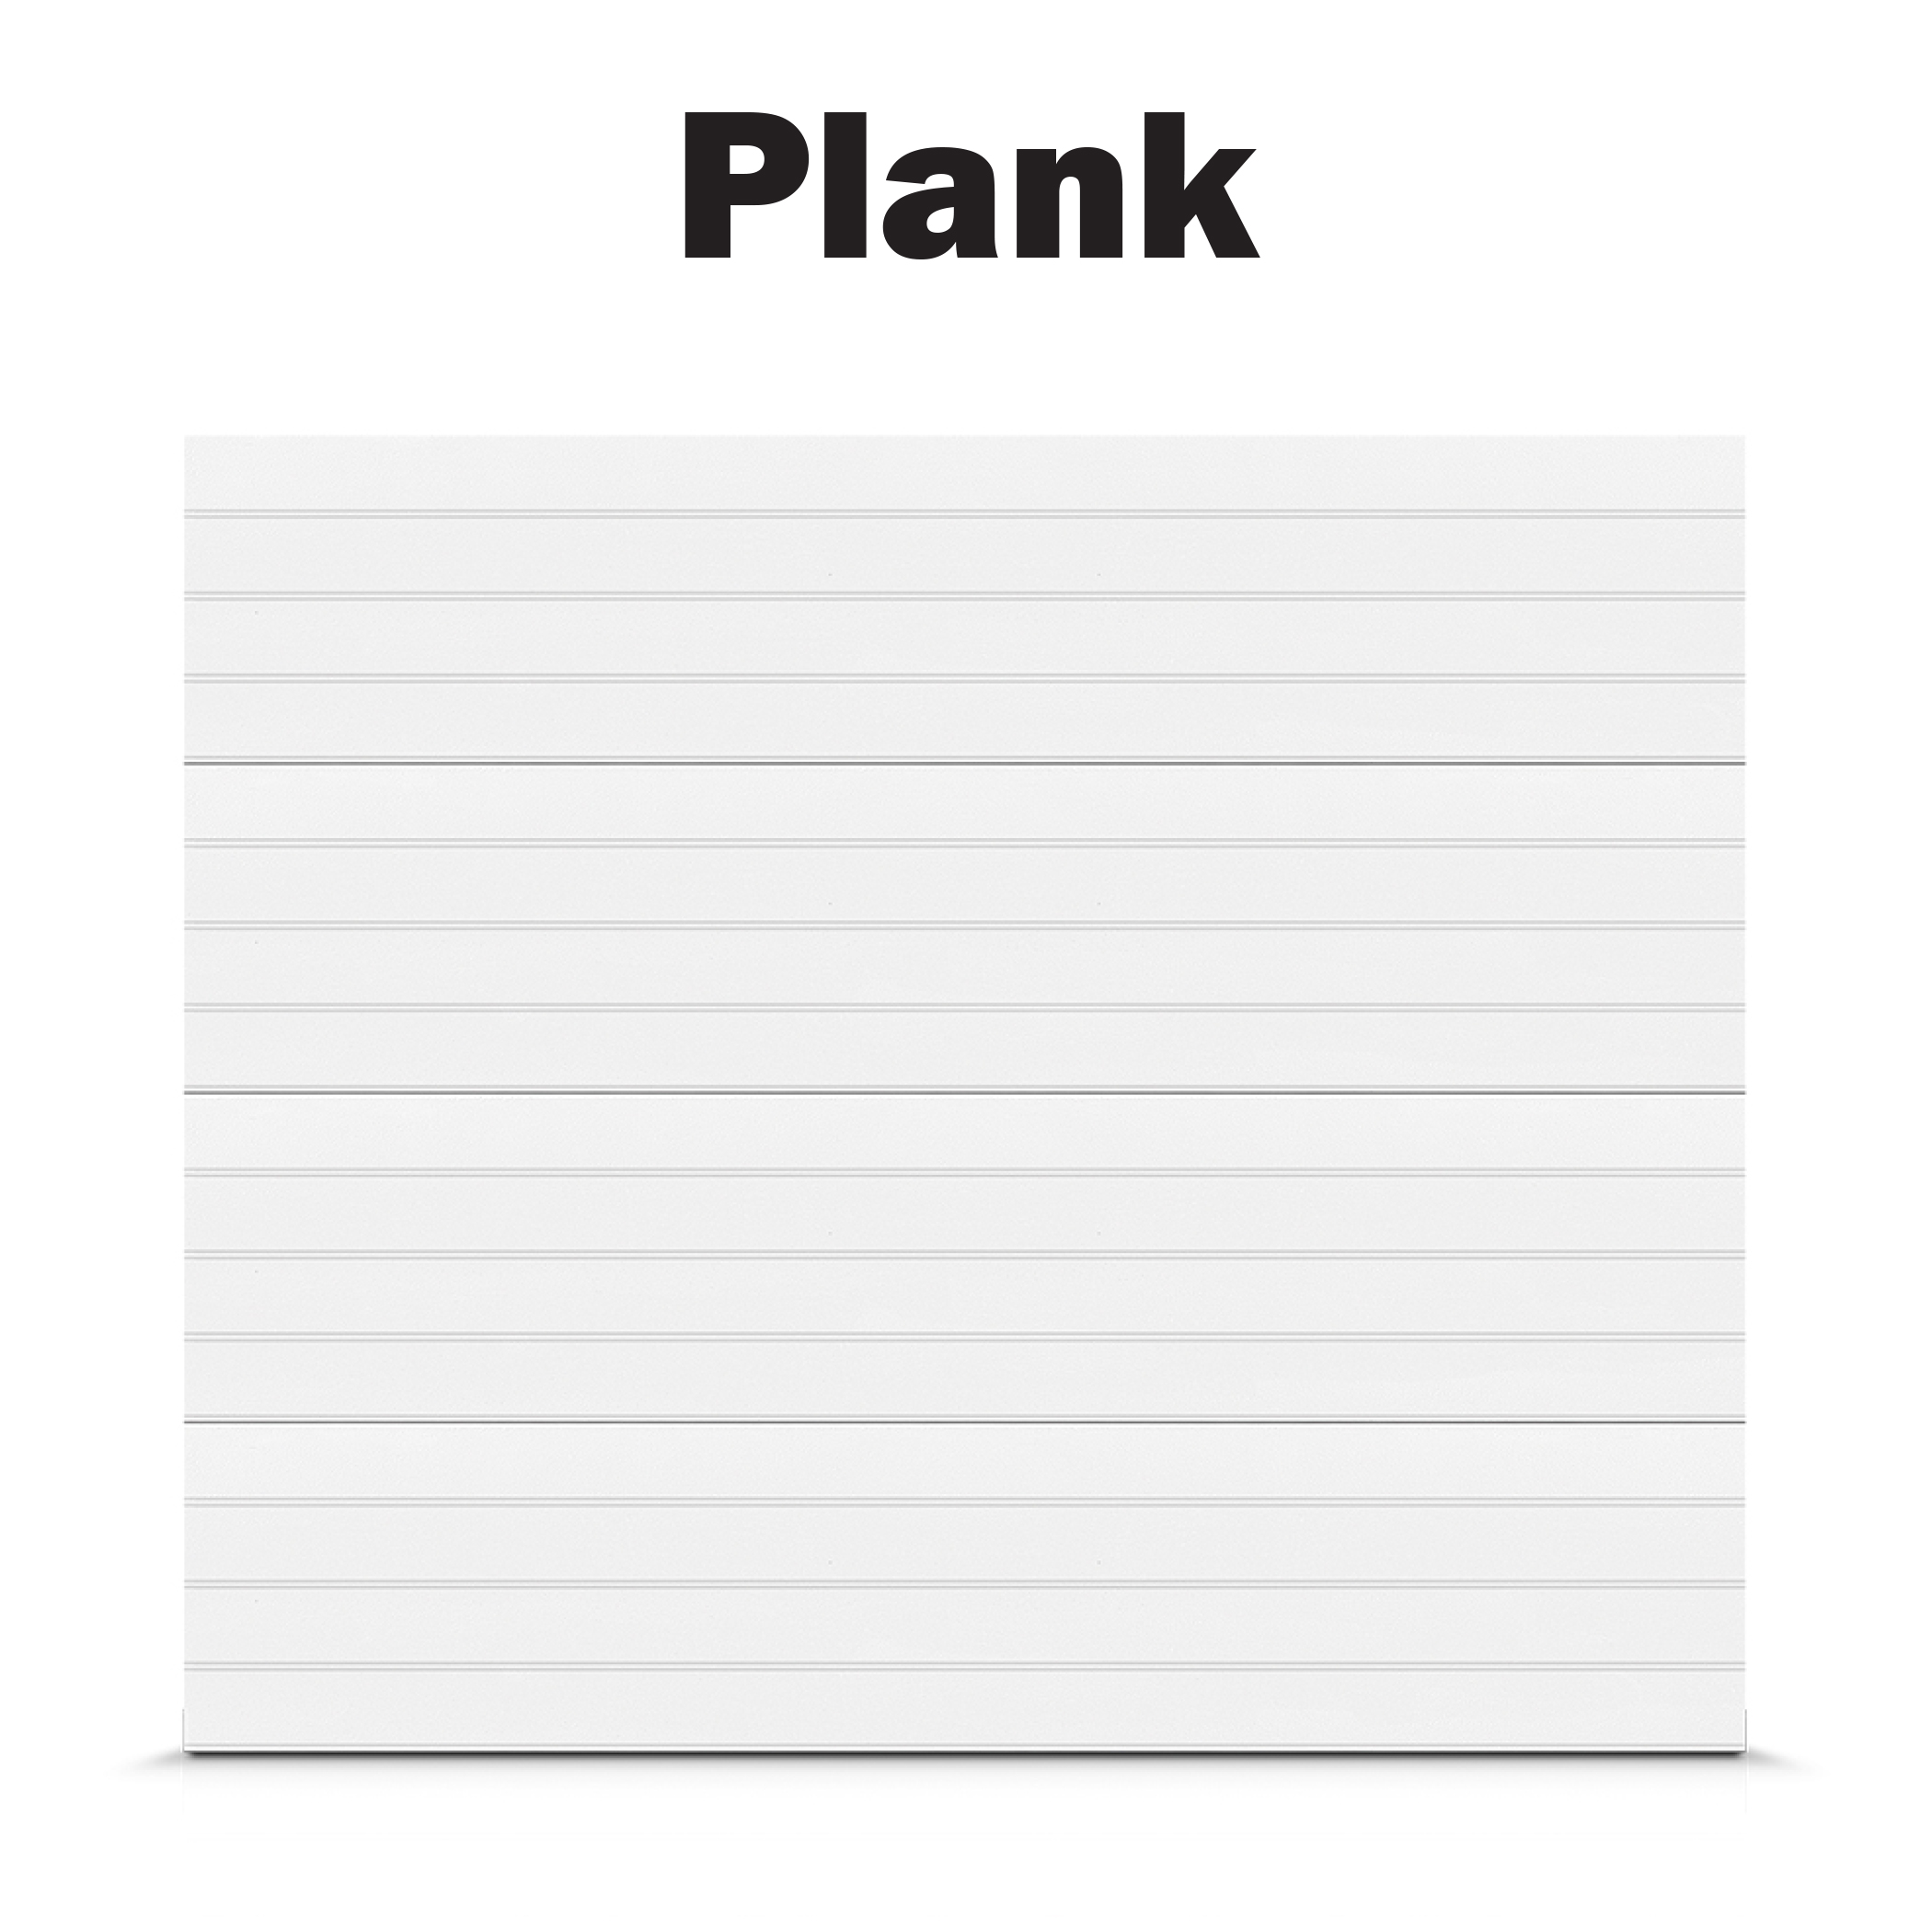 Plank - Classic.jpg